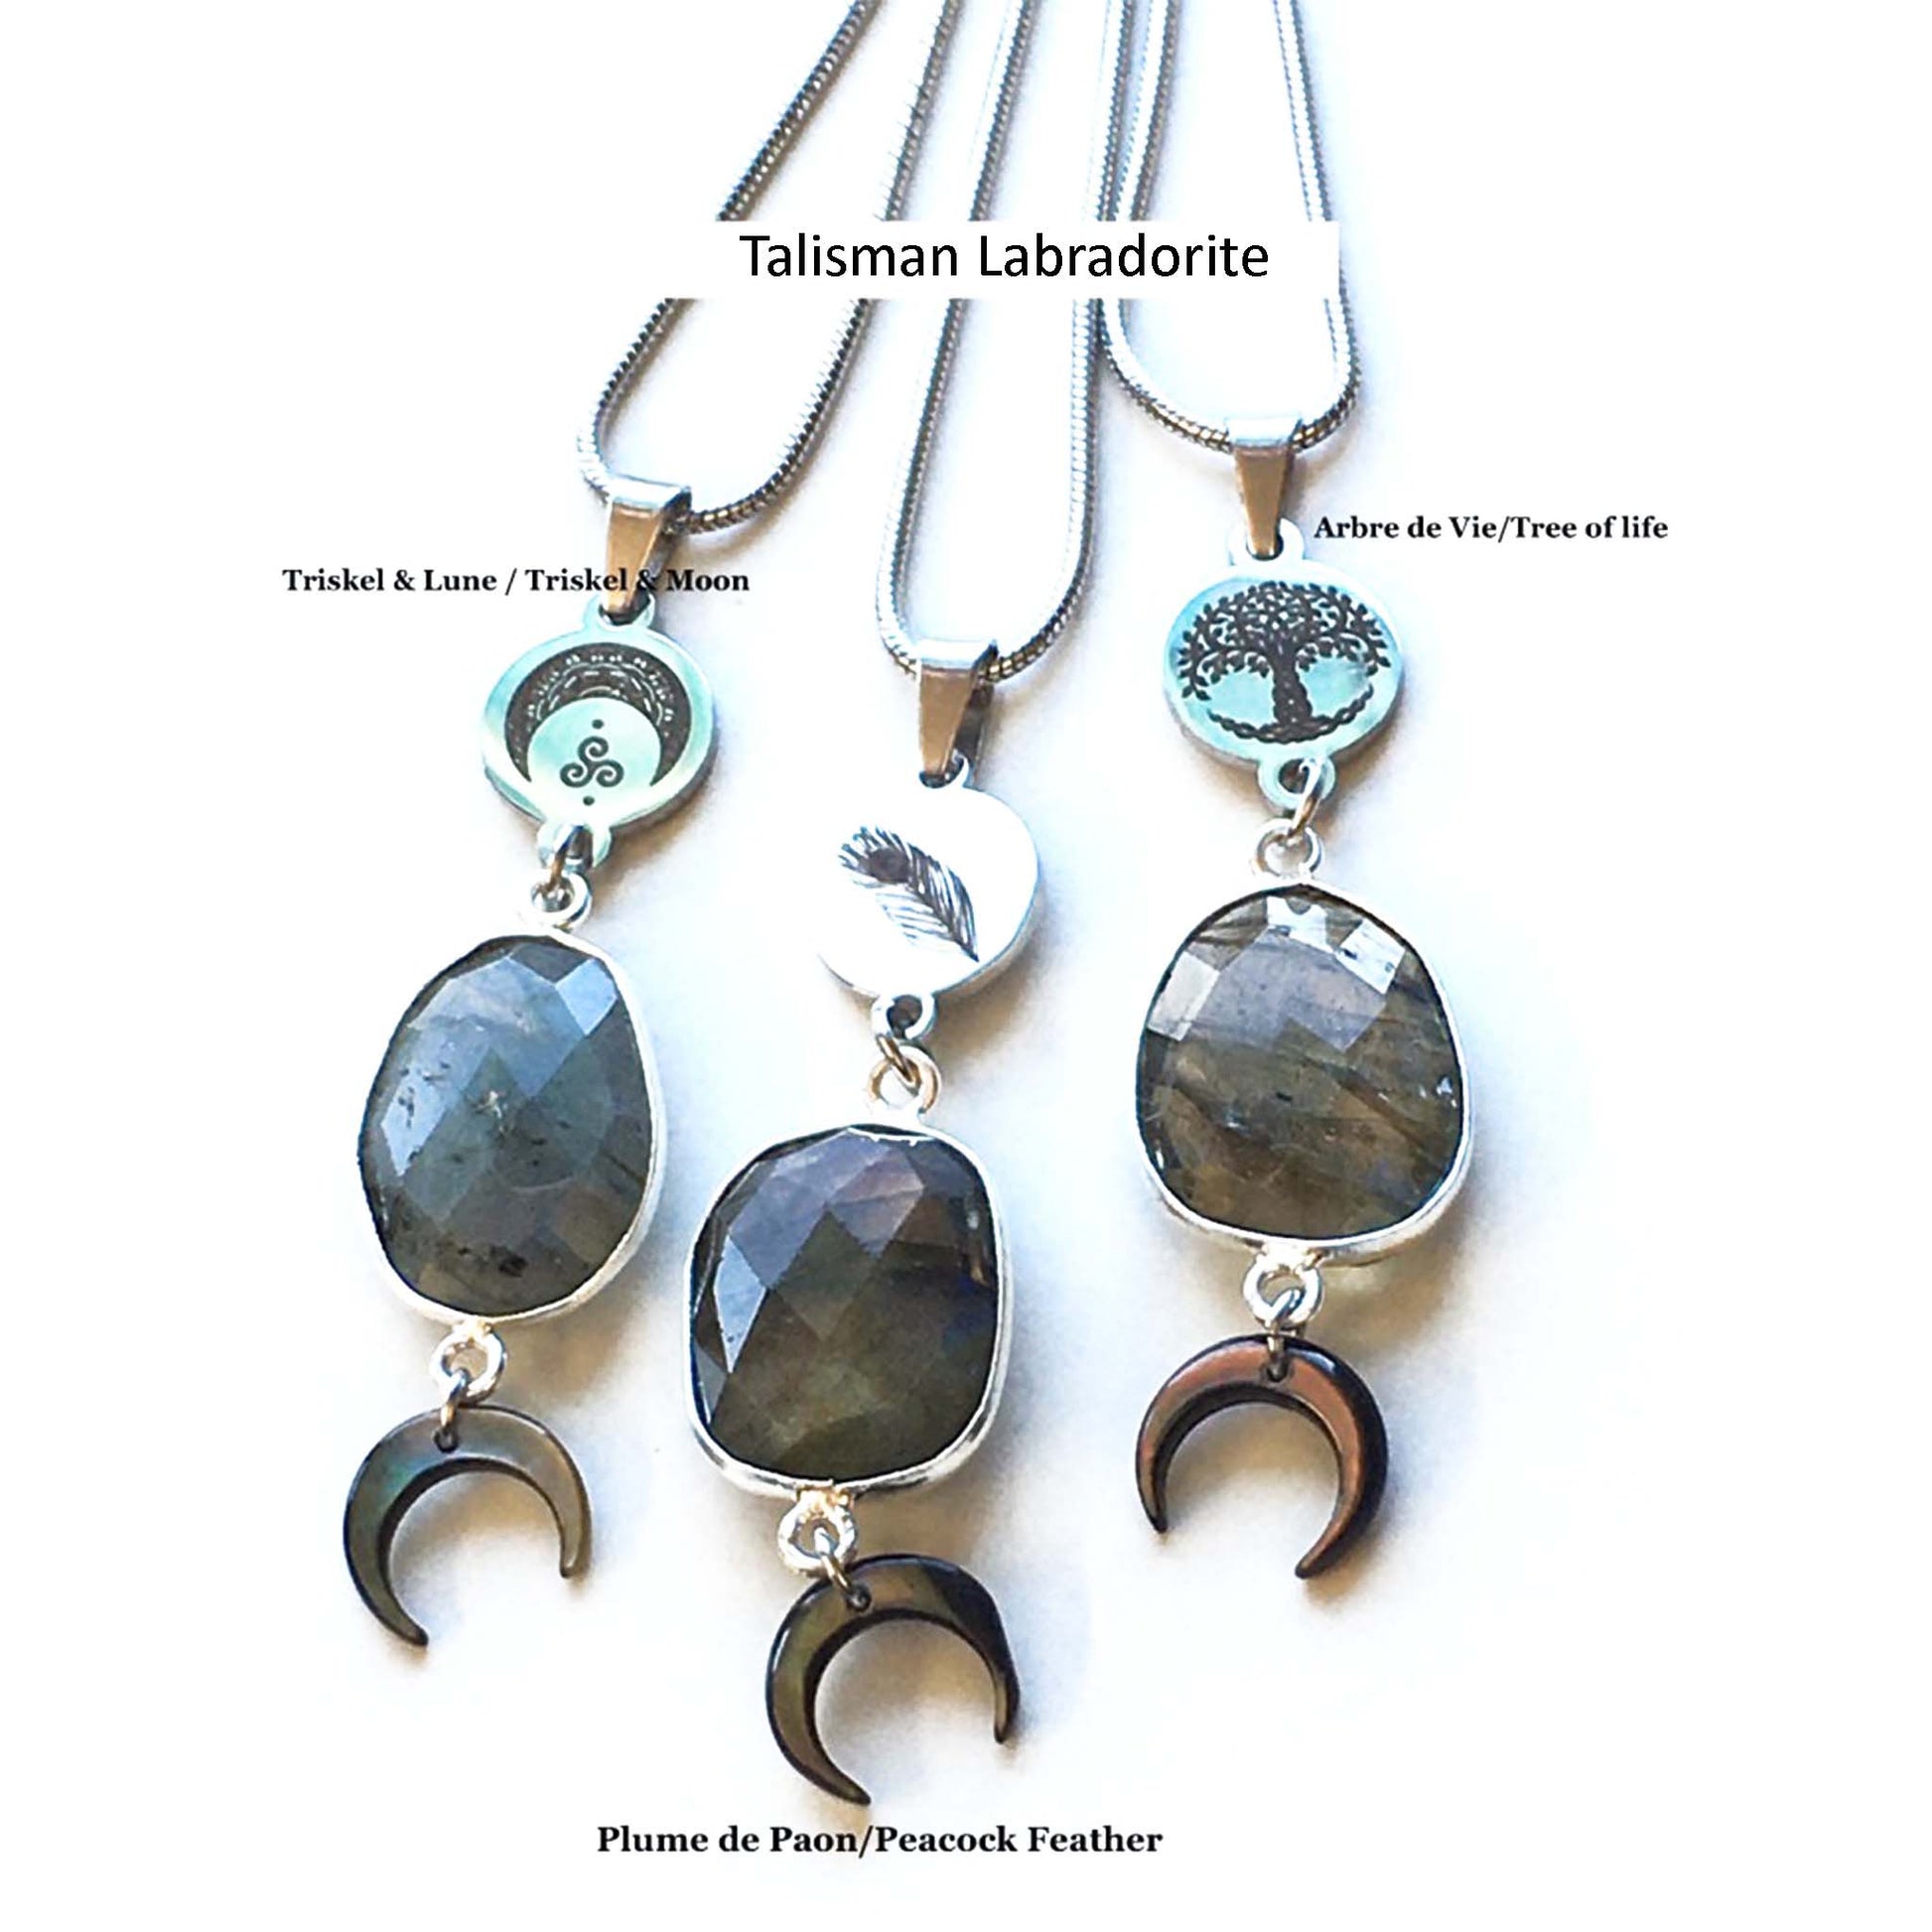 Necklaces - Talisman Labradorite - Choose your symbol